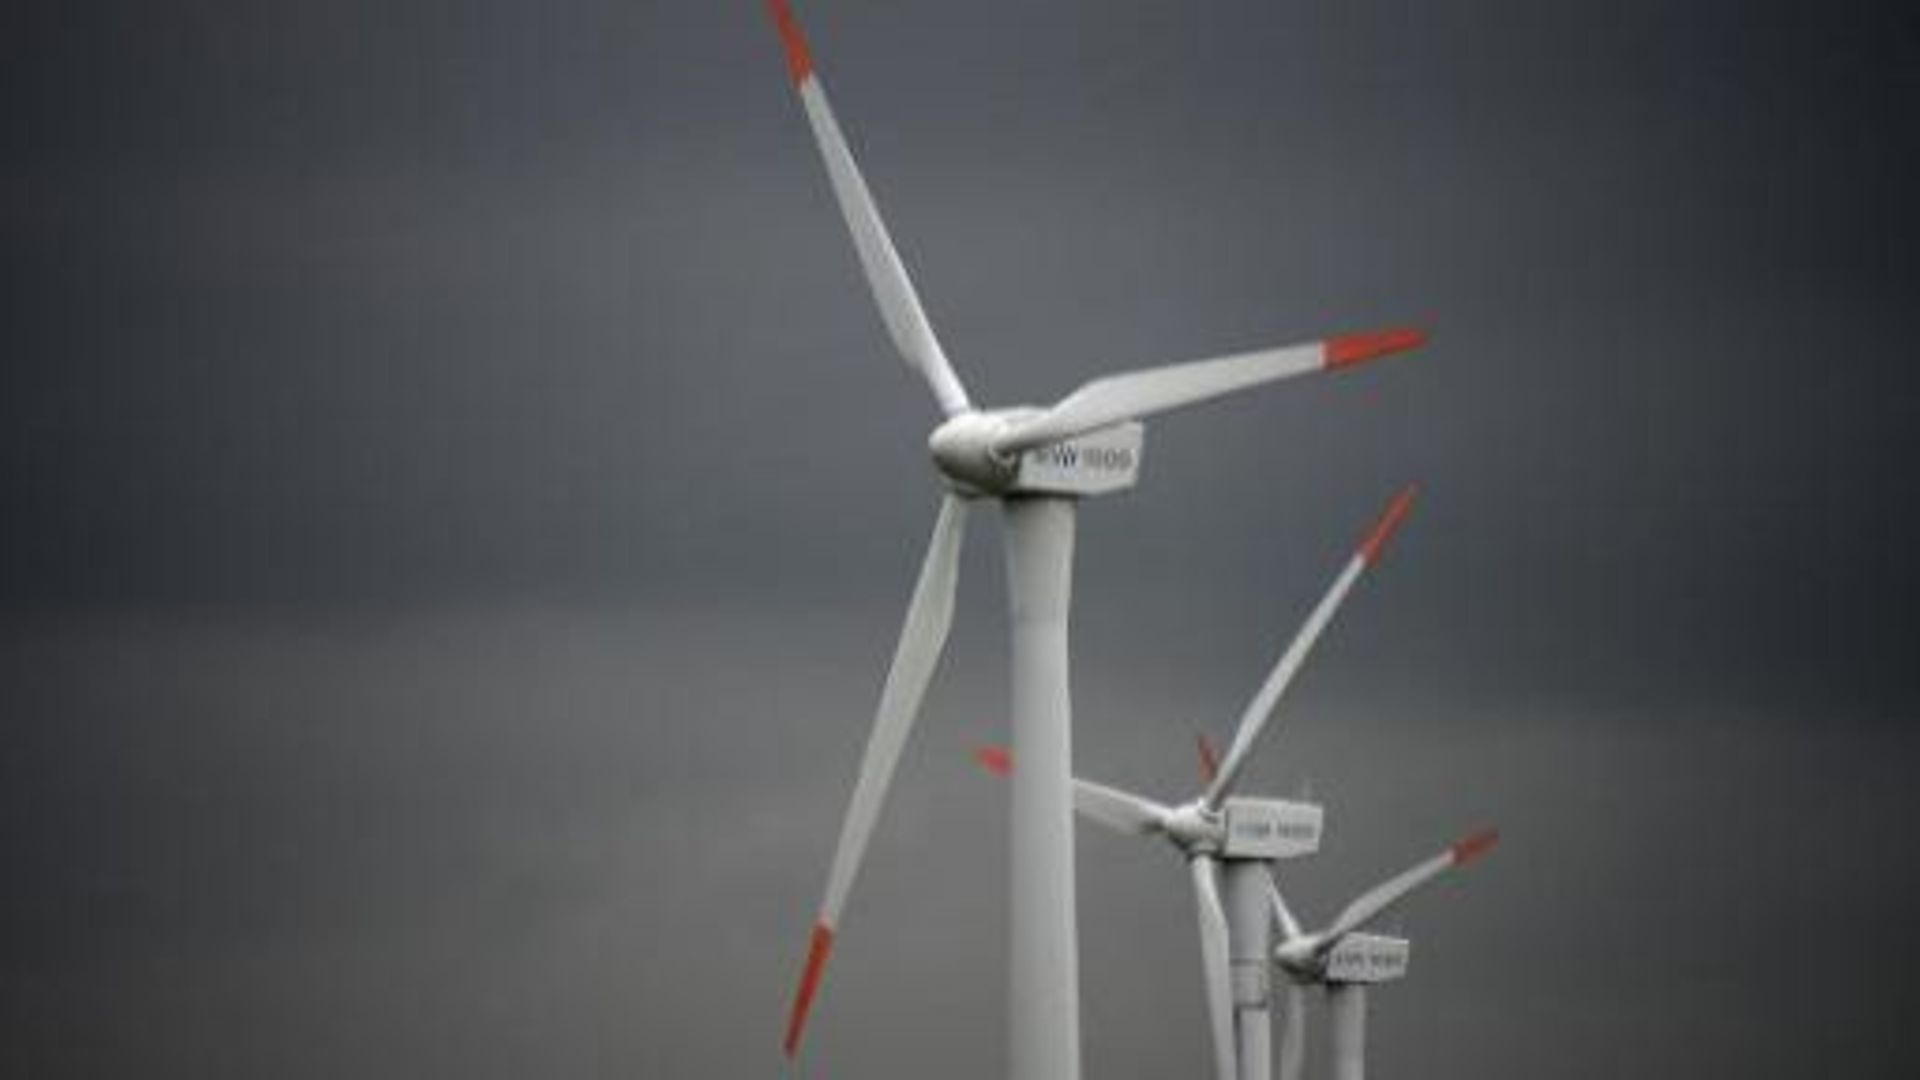 Plus de 100 GW d'énergie éolienne installés en Europe